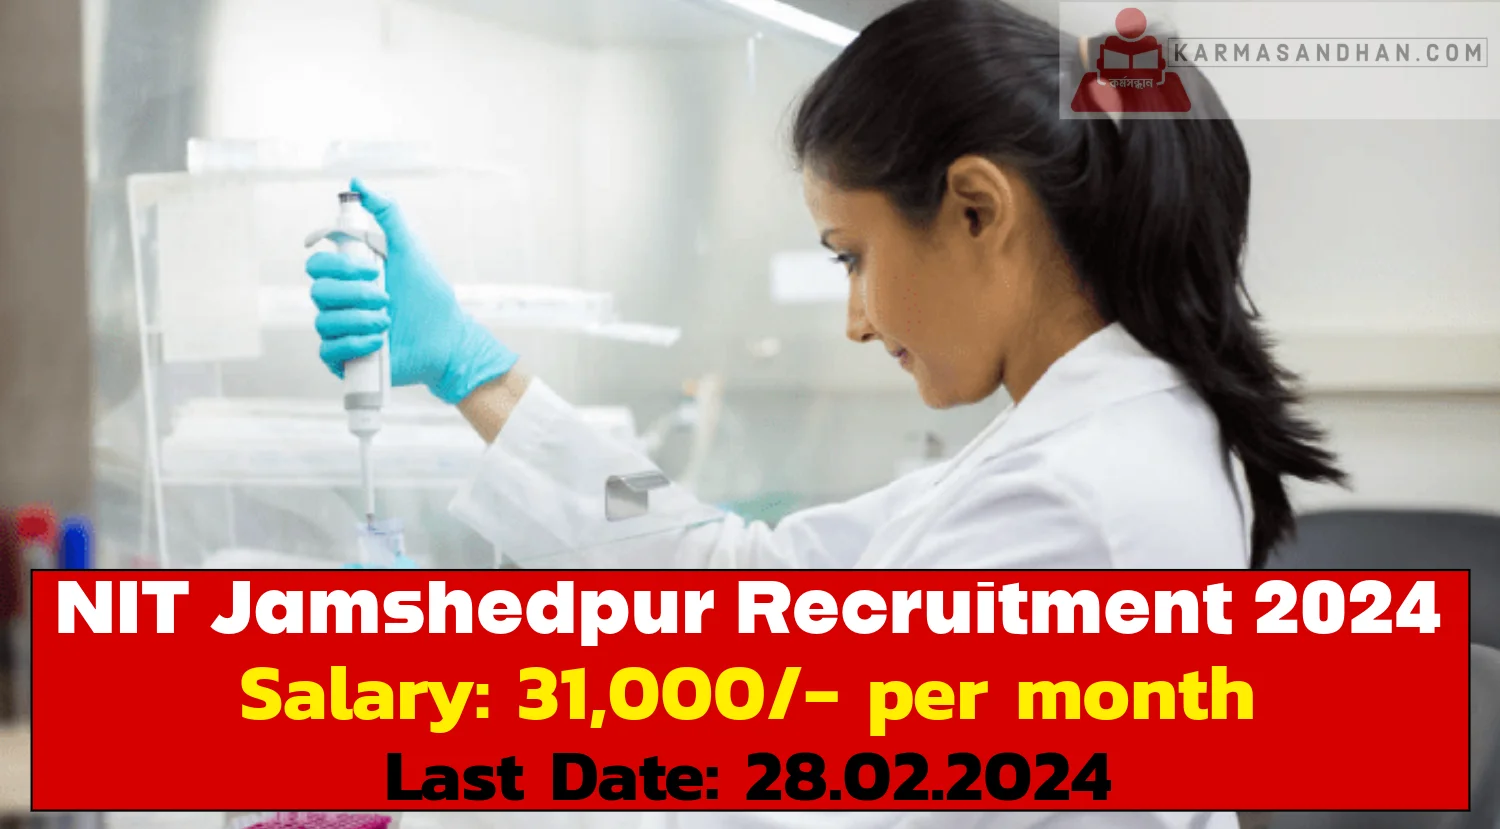 NIT Jamshedpur Recruitment 2024